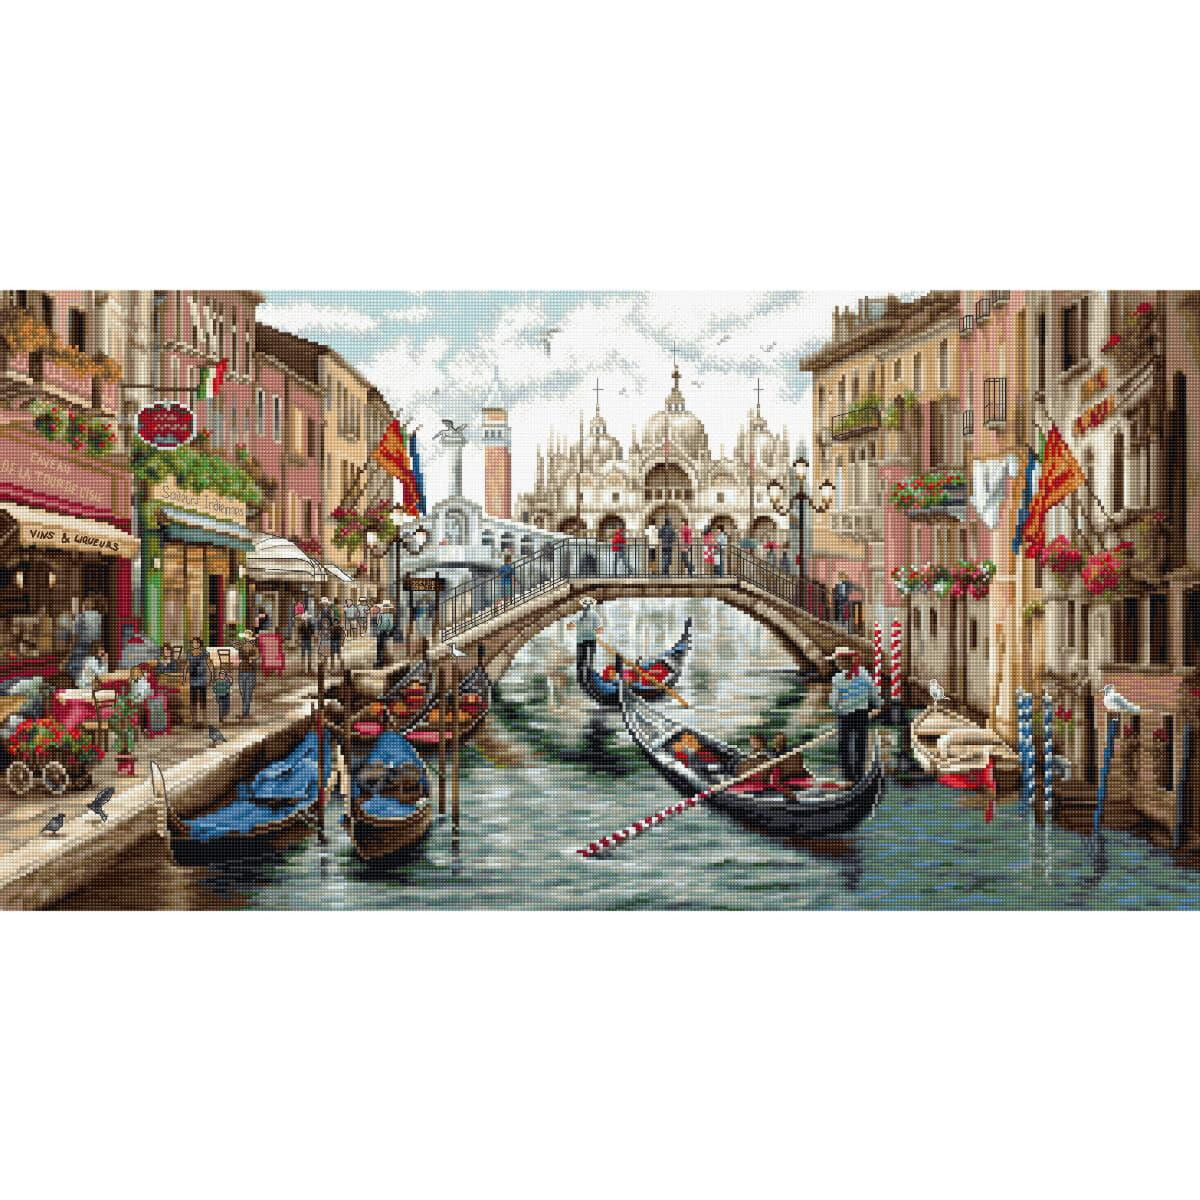 Unaffollata scena di canale a Venezia mostra gondole che...